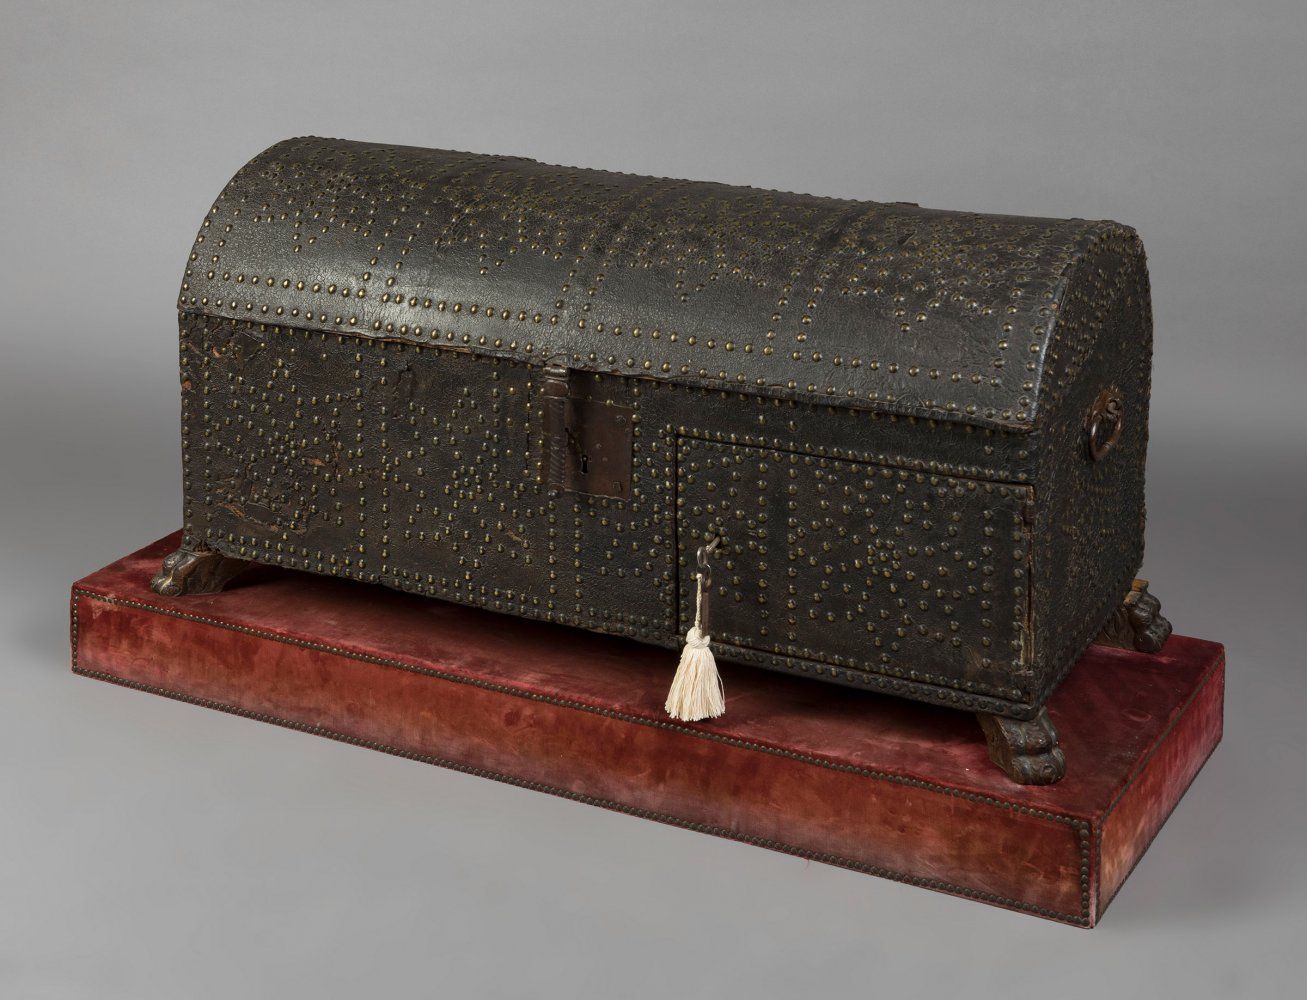 Null 西班牙箱子，17世纪。
木质的皮革装饰。
布衬里的内部。
锁的状况良好。
钥匙被保留下来。
保存状况良好。
波尔多色的天鹅绒布衬里的底座。右后腿没有连&hellip;